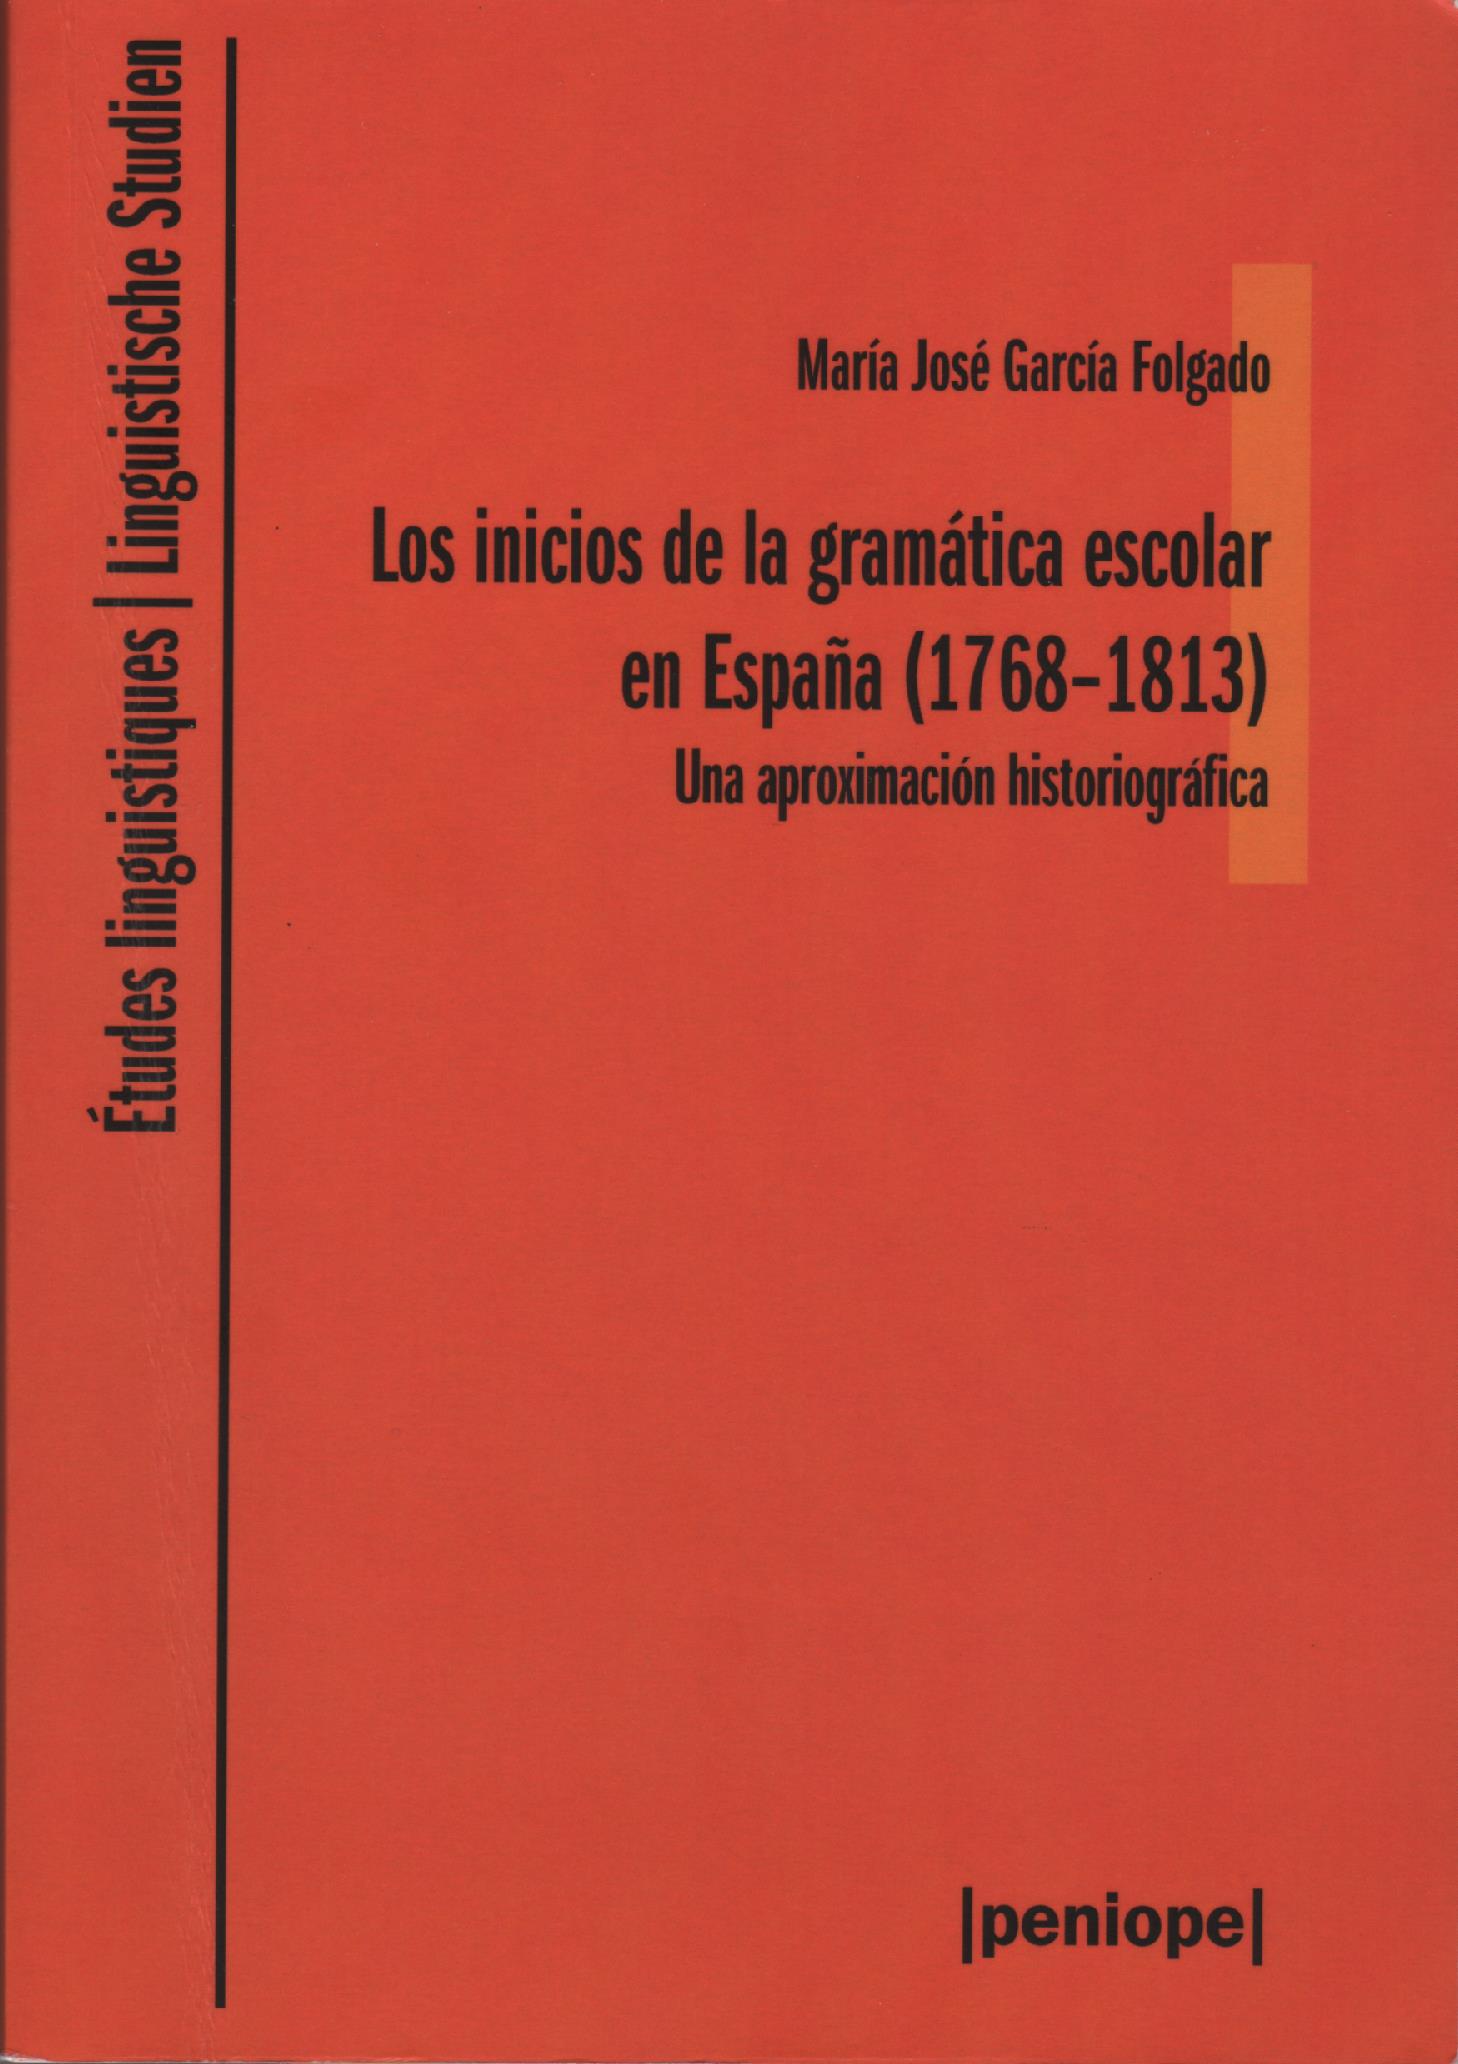 Imagen de portada del libro Los inicios de la gramática escolar en España (1768-1813)